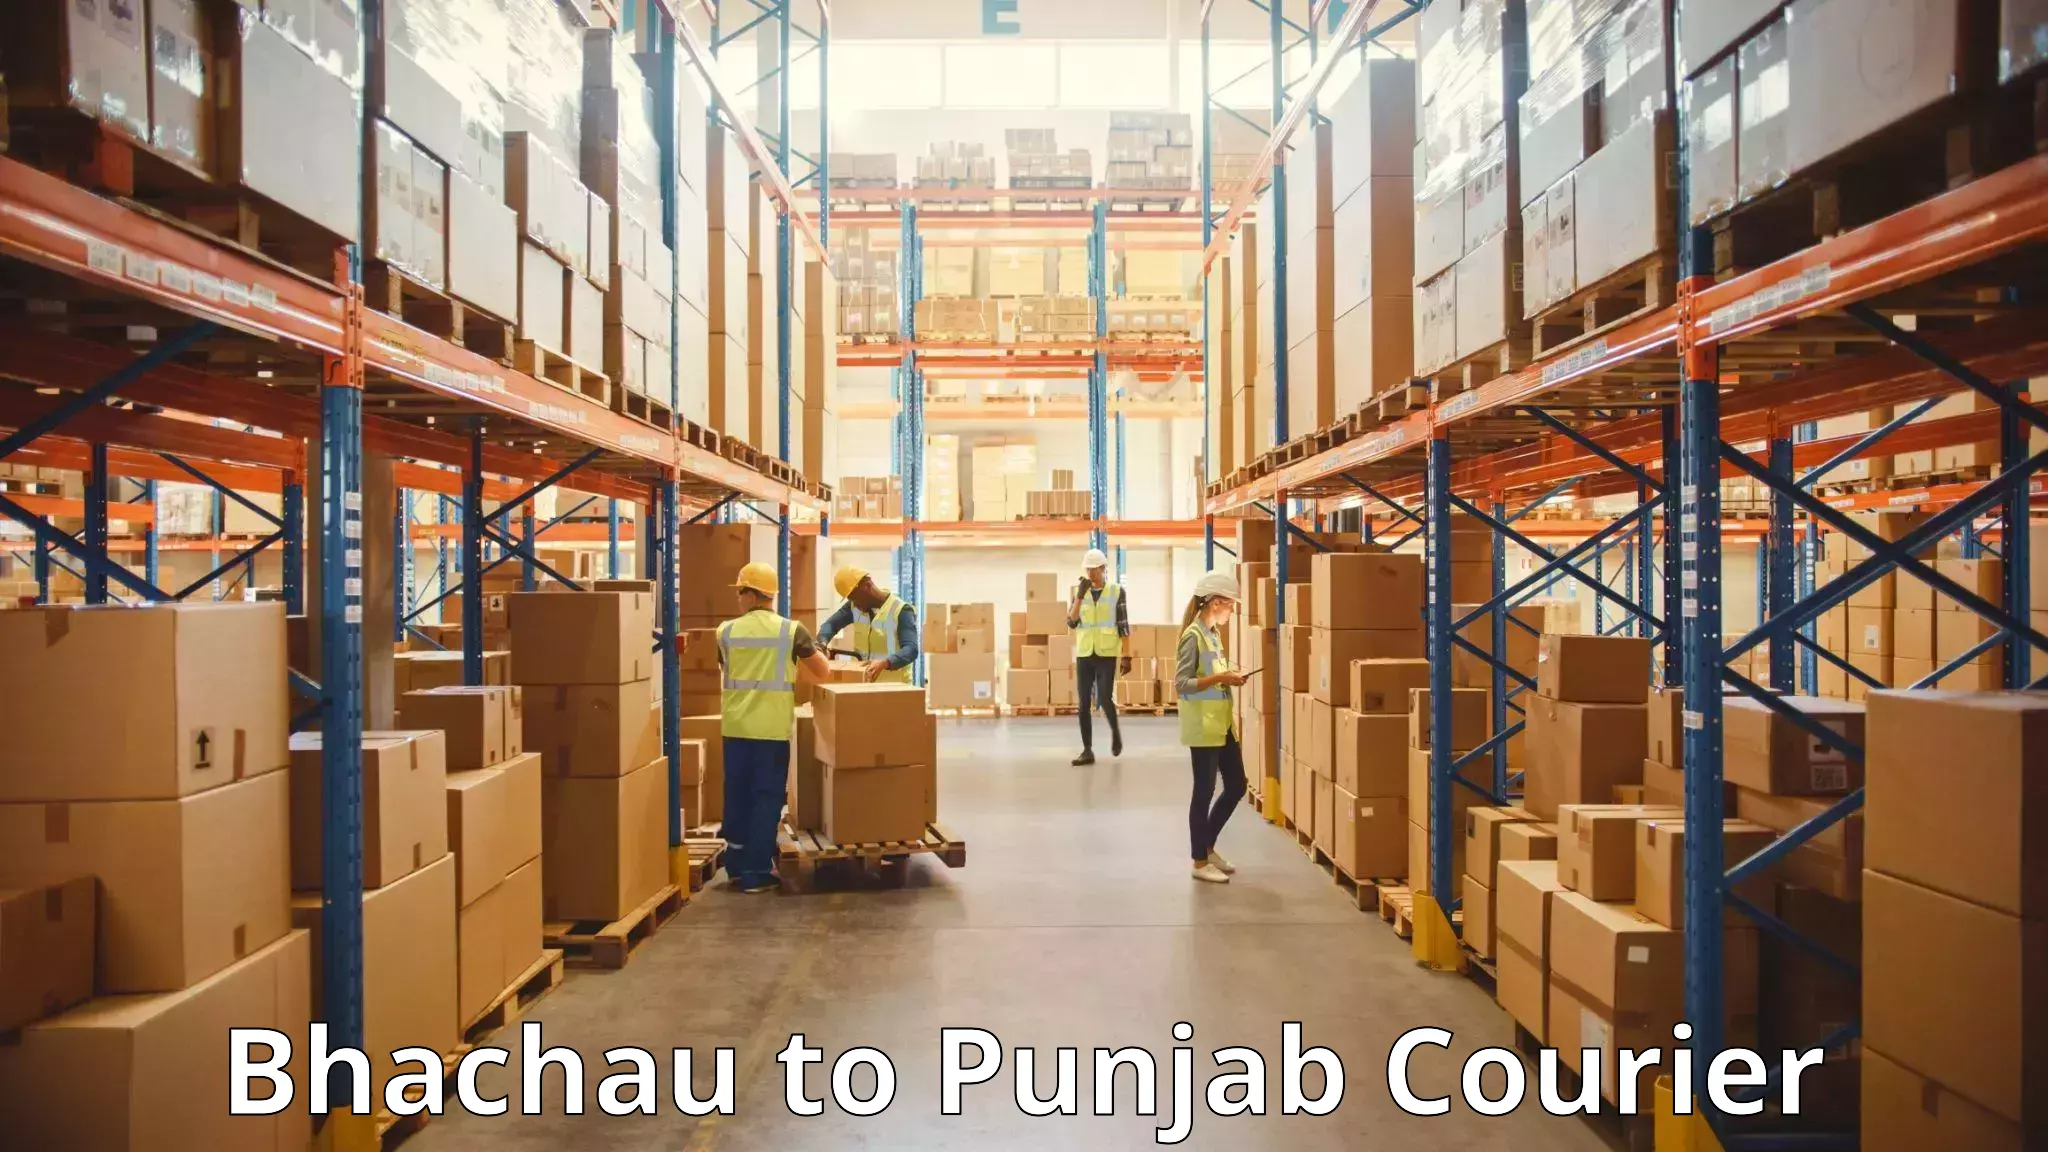 Automated luggage transport Bhachau to Punjab